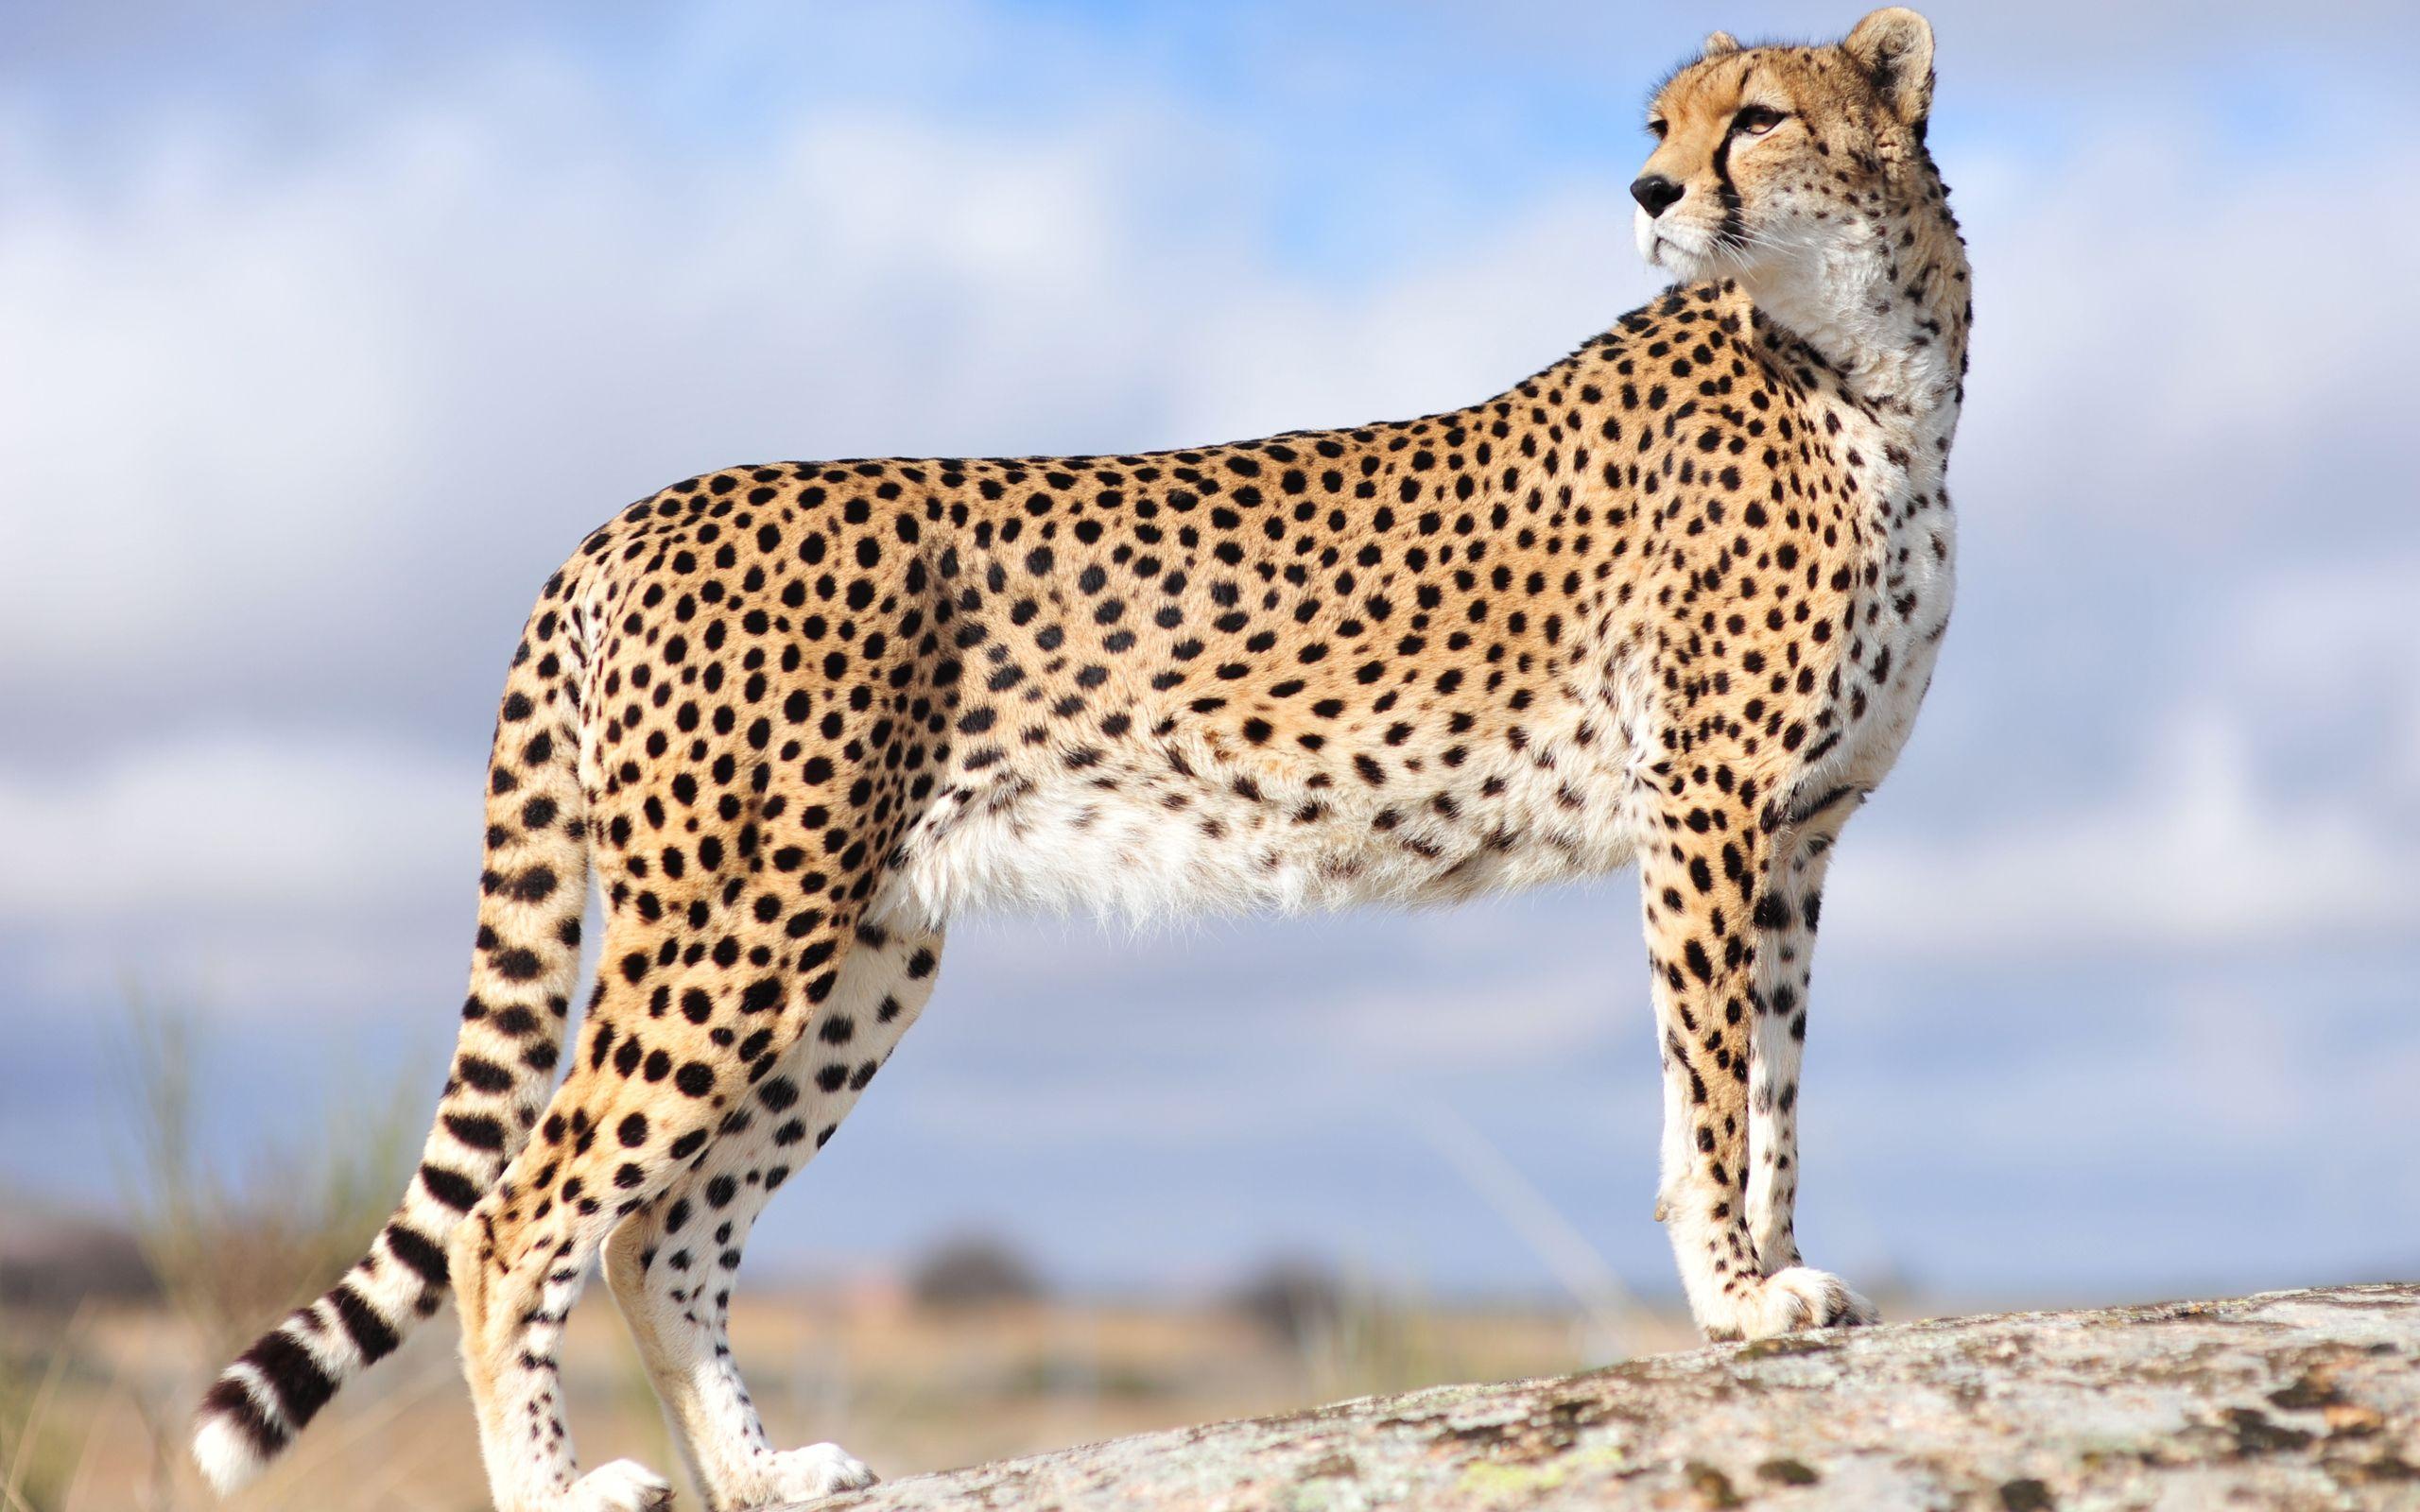 MX 159 Cheetah Wallpaper, Cheetah Adorable Desktop Image For Free